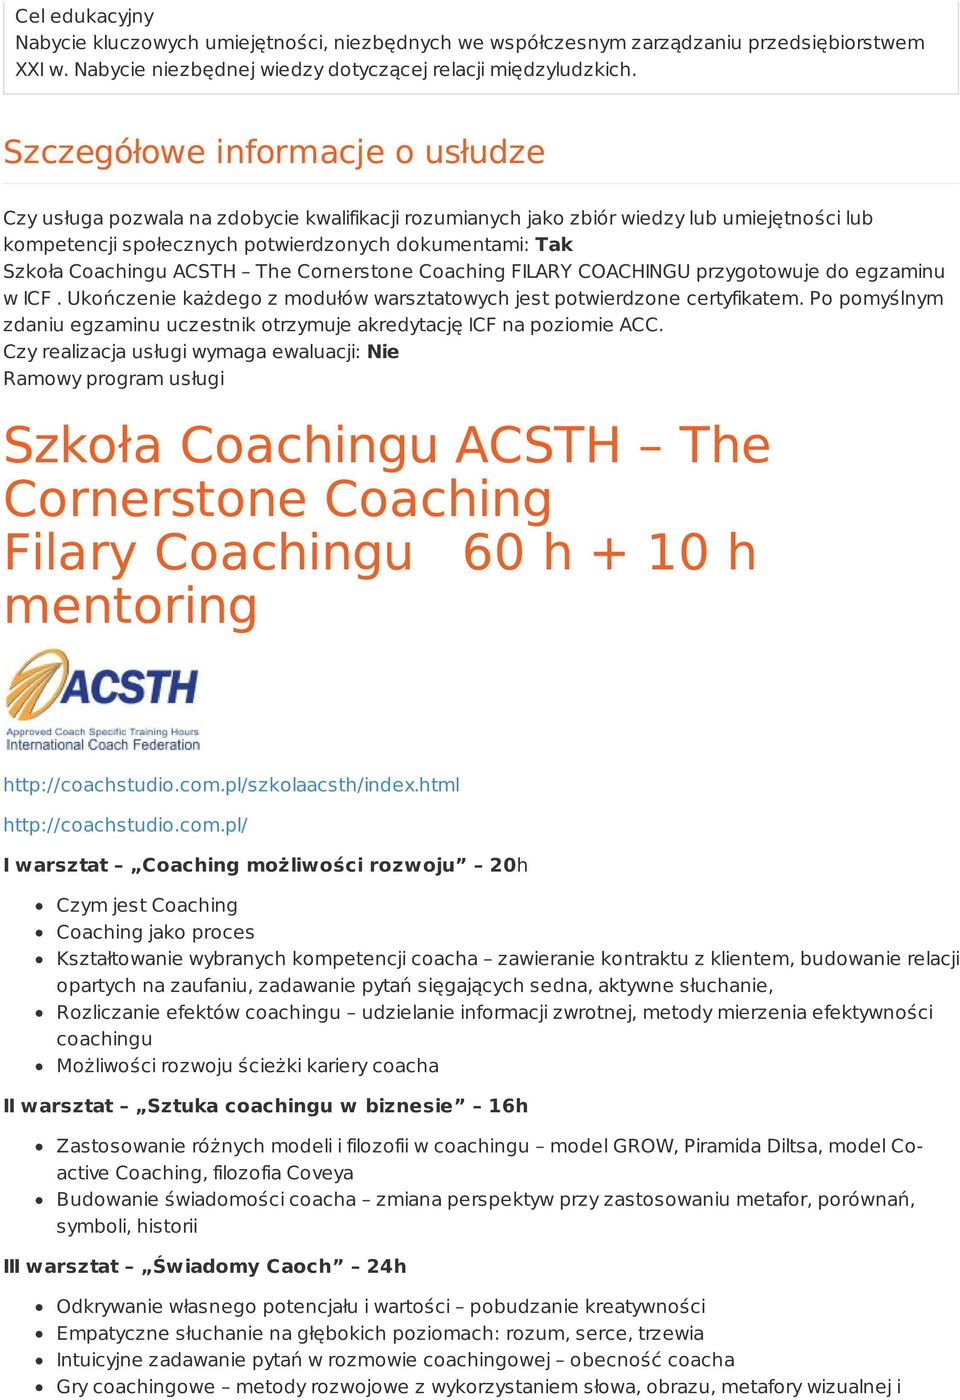 Coachingu ACSTH The Cornerstone Coaching FILARY COACHINGU przygotowuje do egzaminu w ICF. Ukończenie każdego z modułów warsztatowych jest potwierdzone certyfikatem.